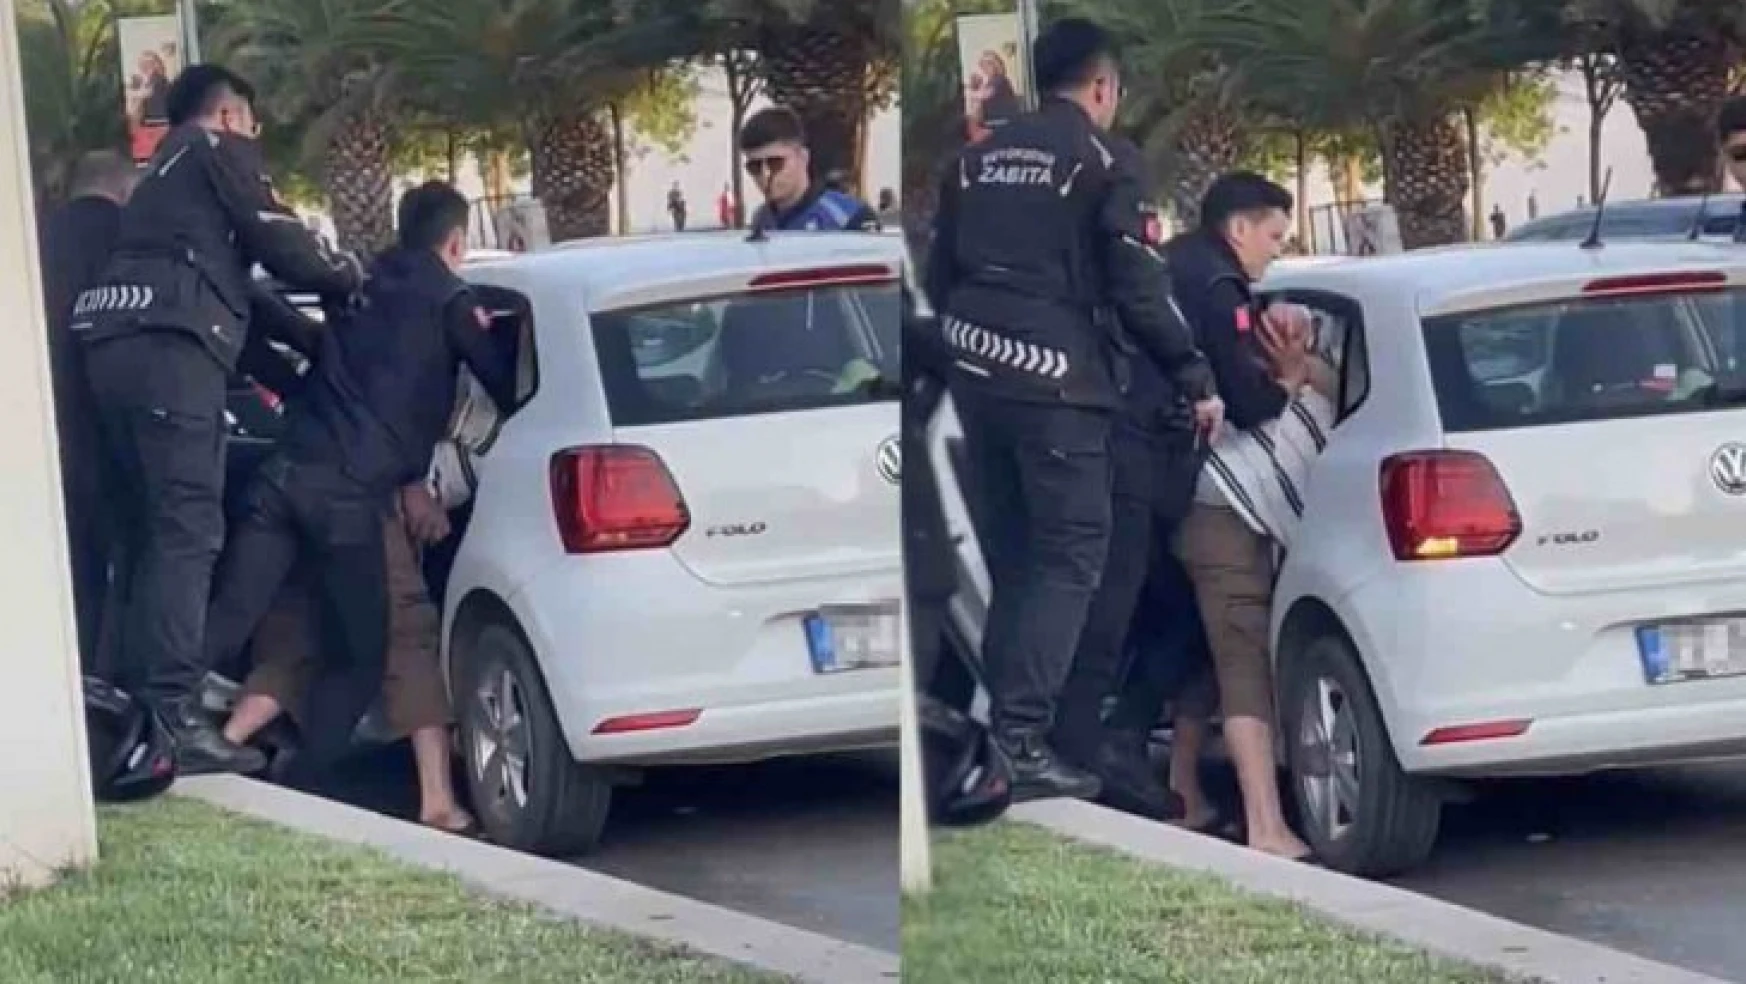 Maltepe'de zabıta tartıştığı vatandaşı ittirerek aracına sokmaya çalıştı